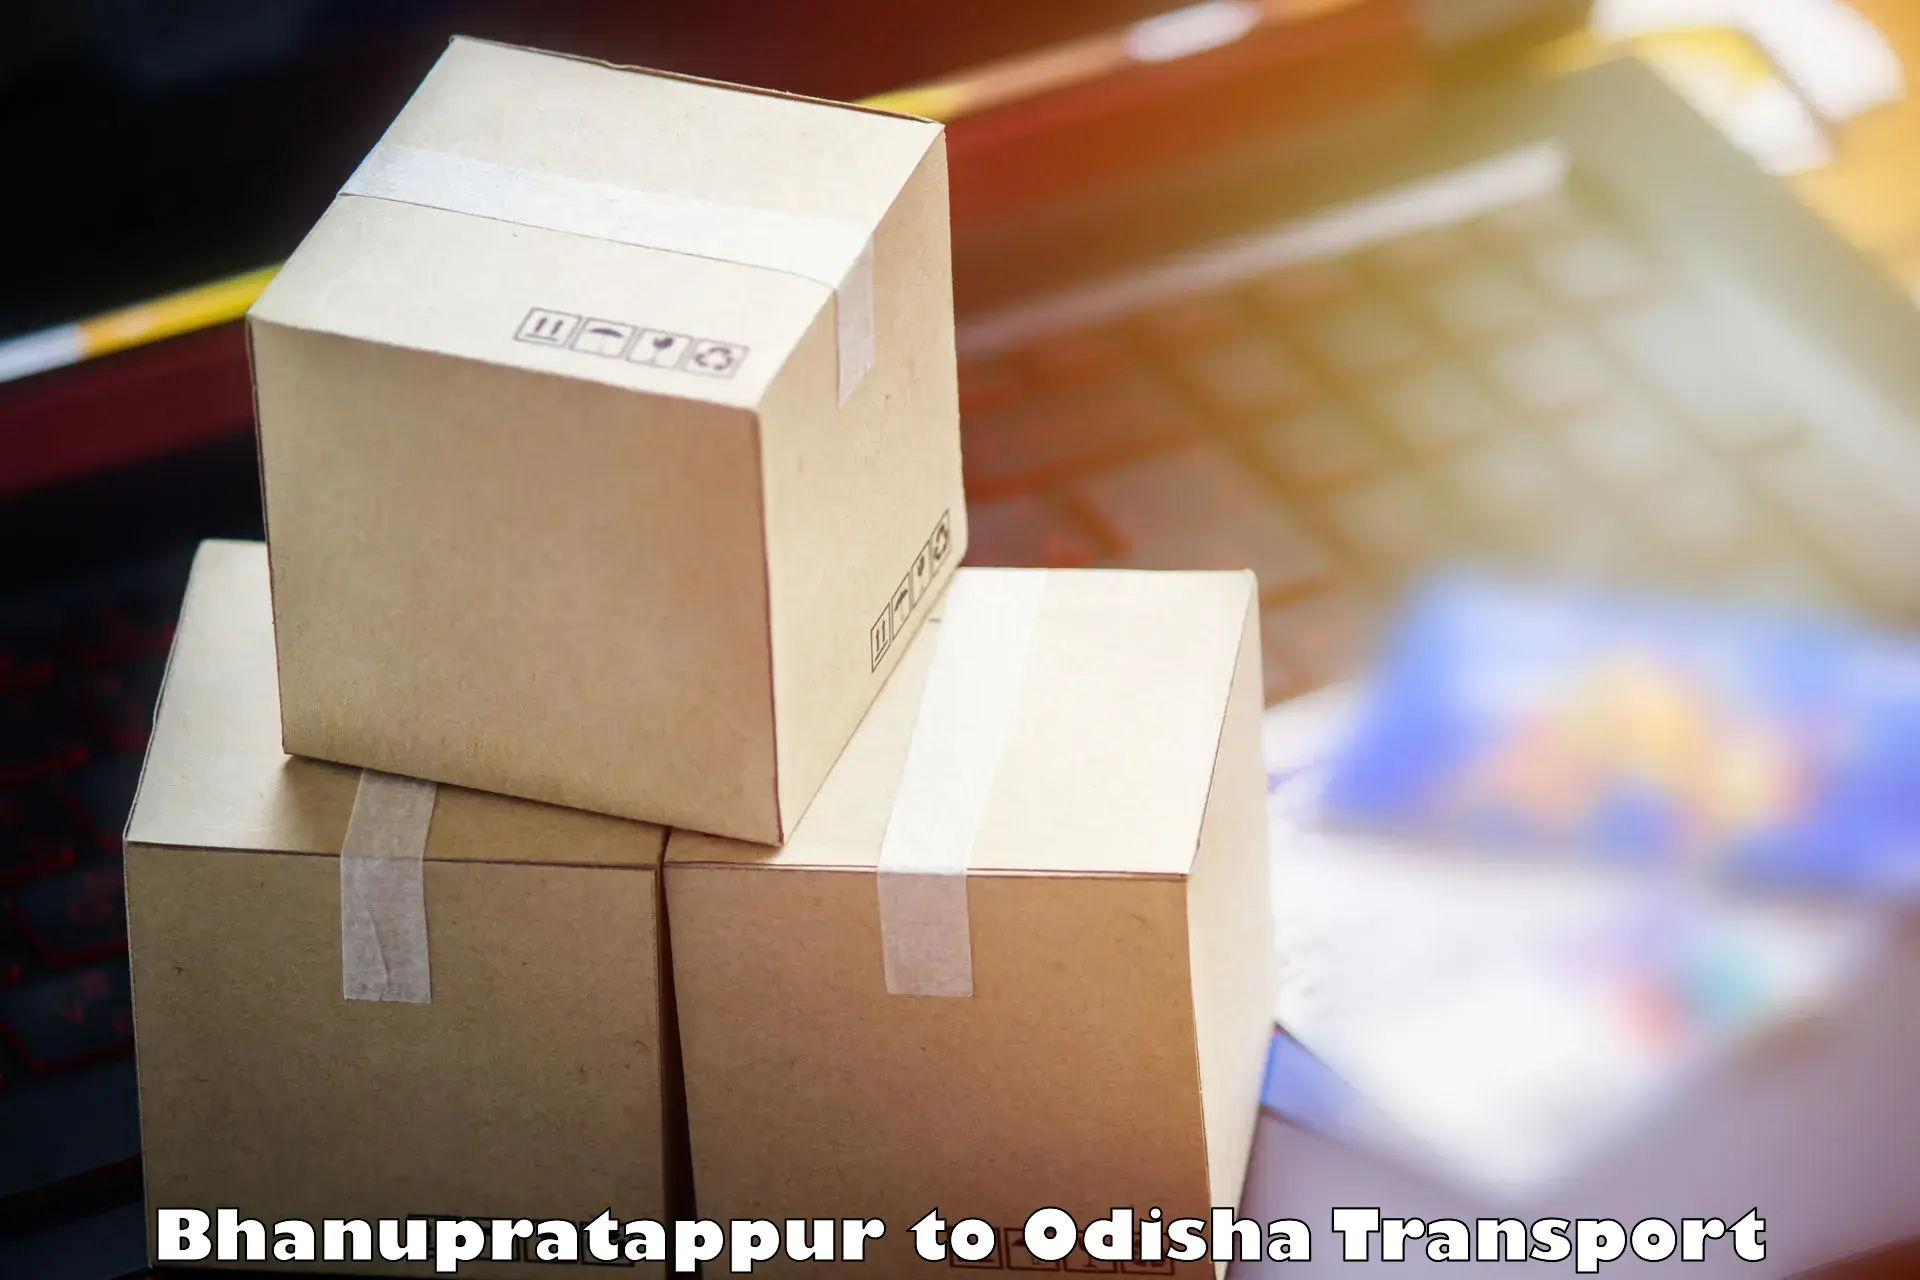 Container transportation services in Bhanupratappur to Patkura